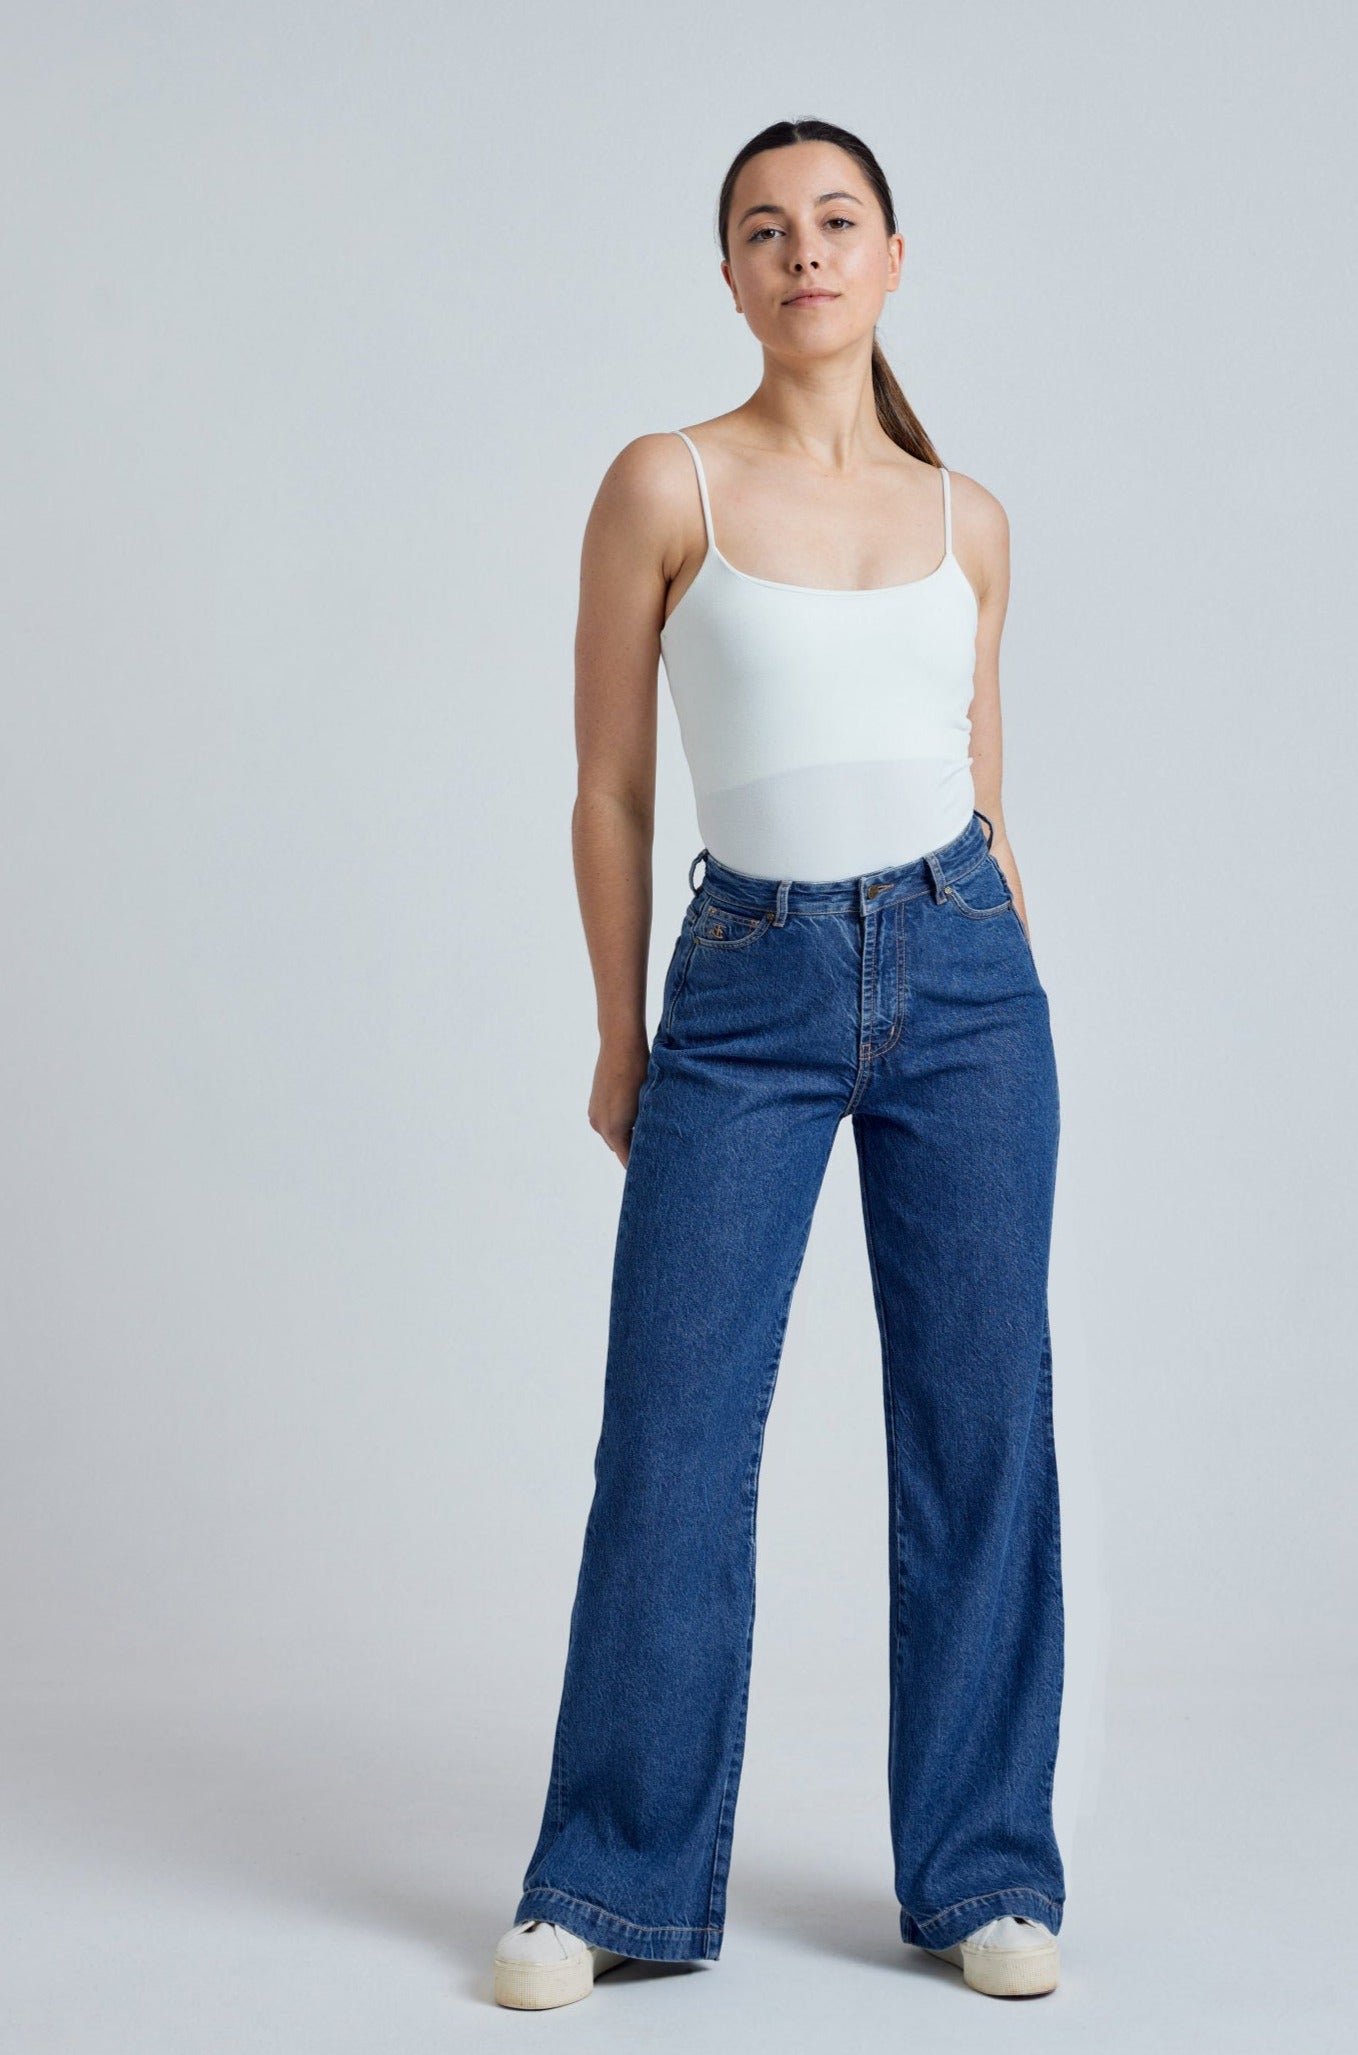 ETTA High Waist - GOTS Organic Cotton Jeans by Flax & Loom, 27" / Regular